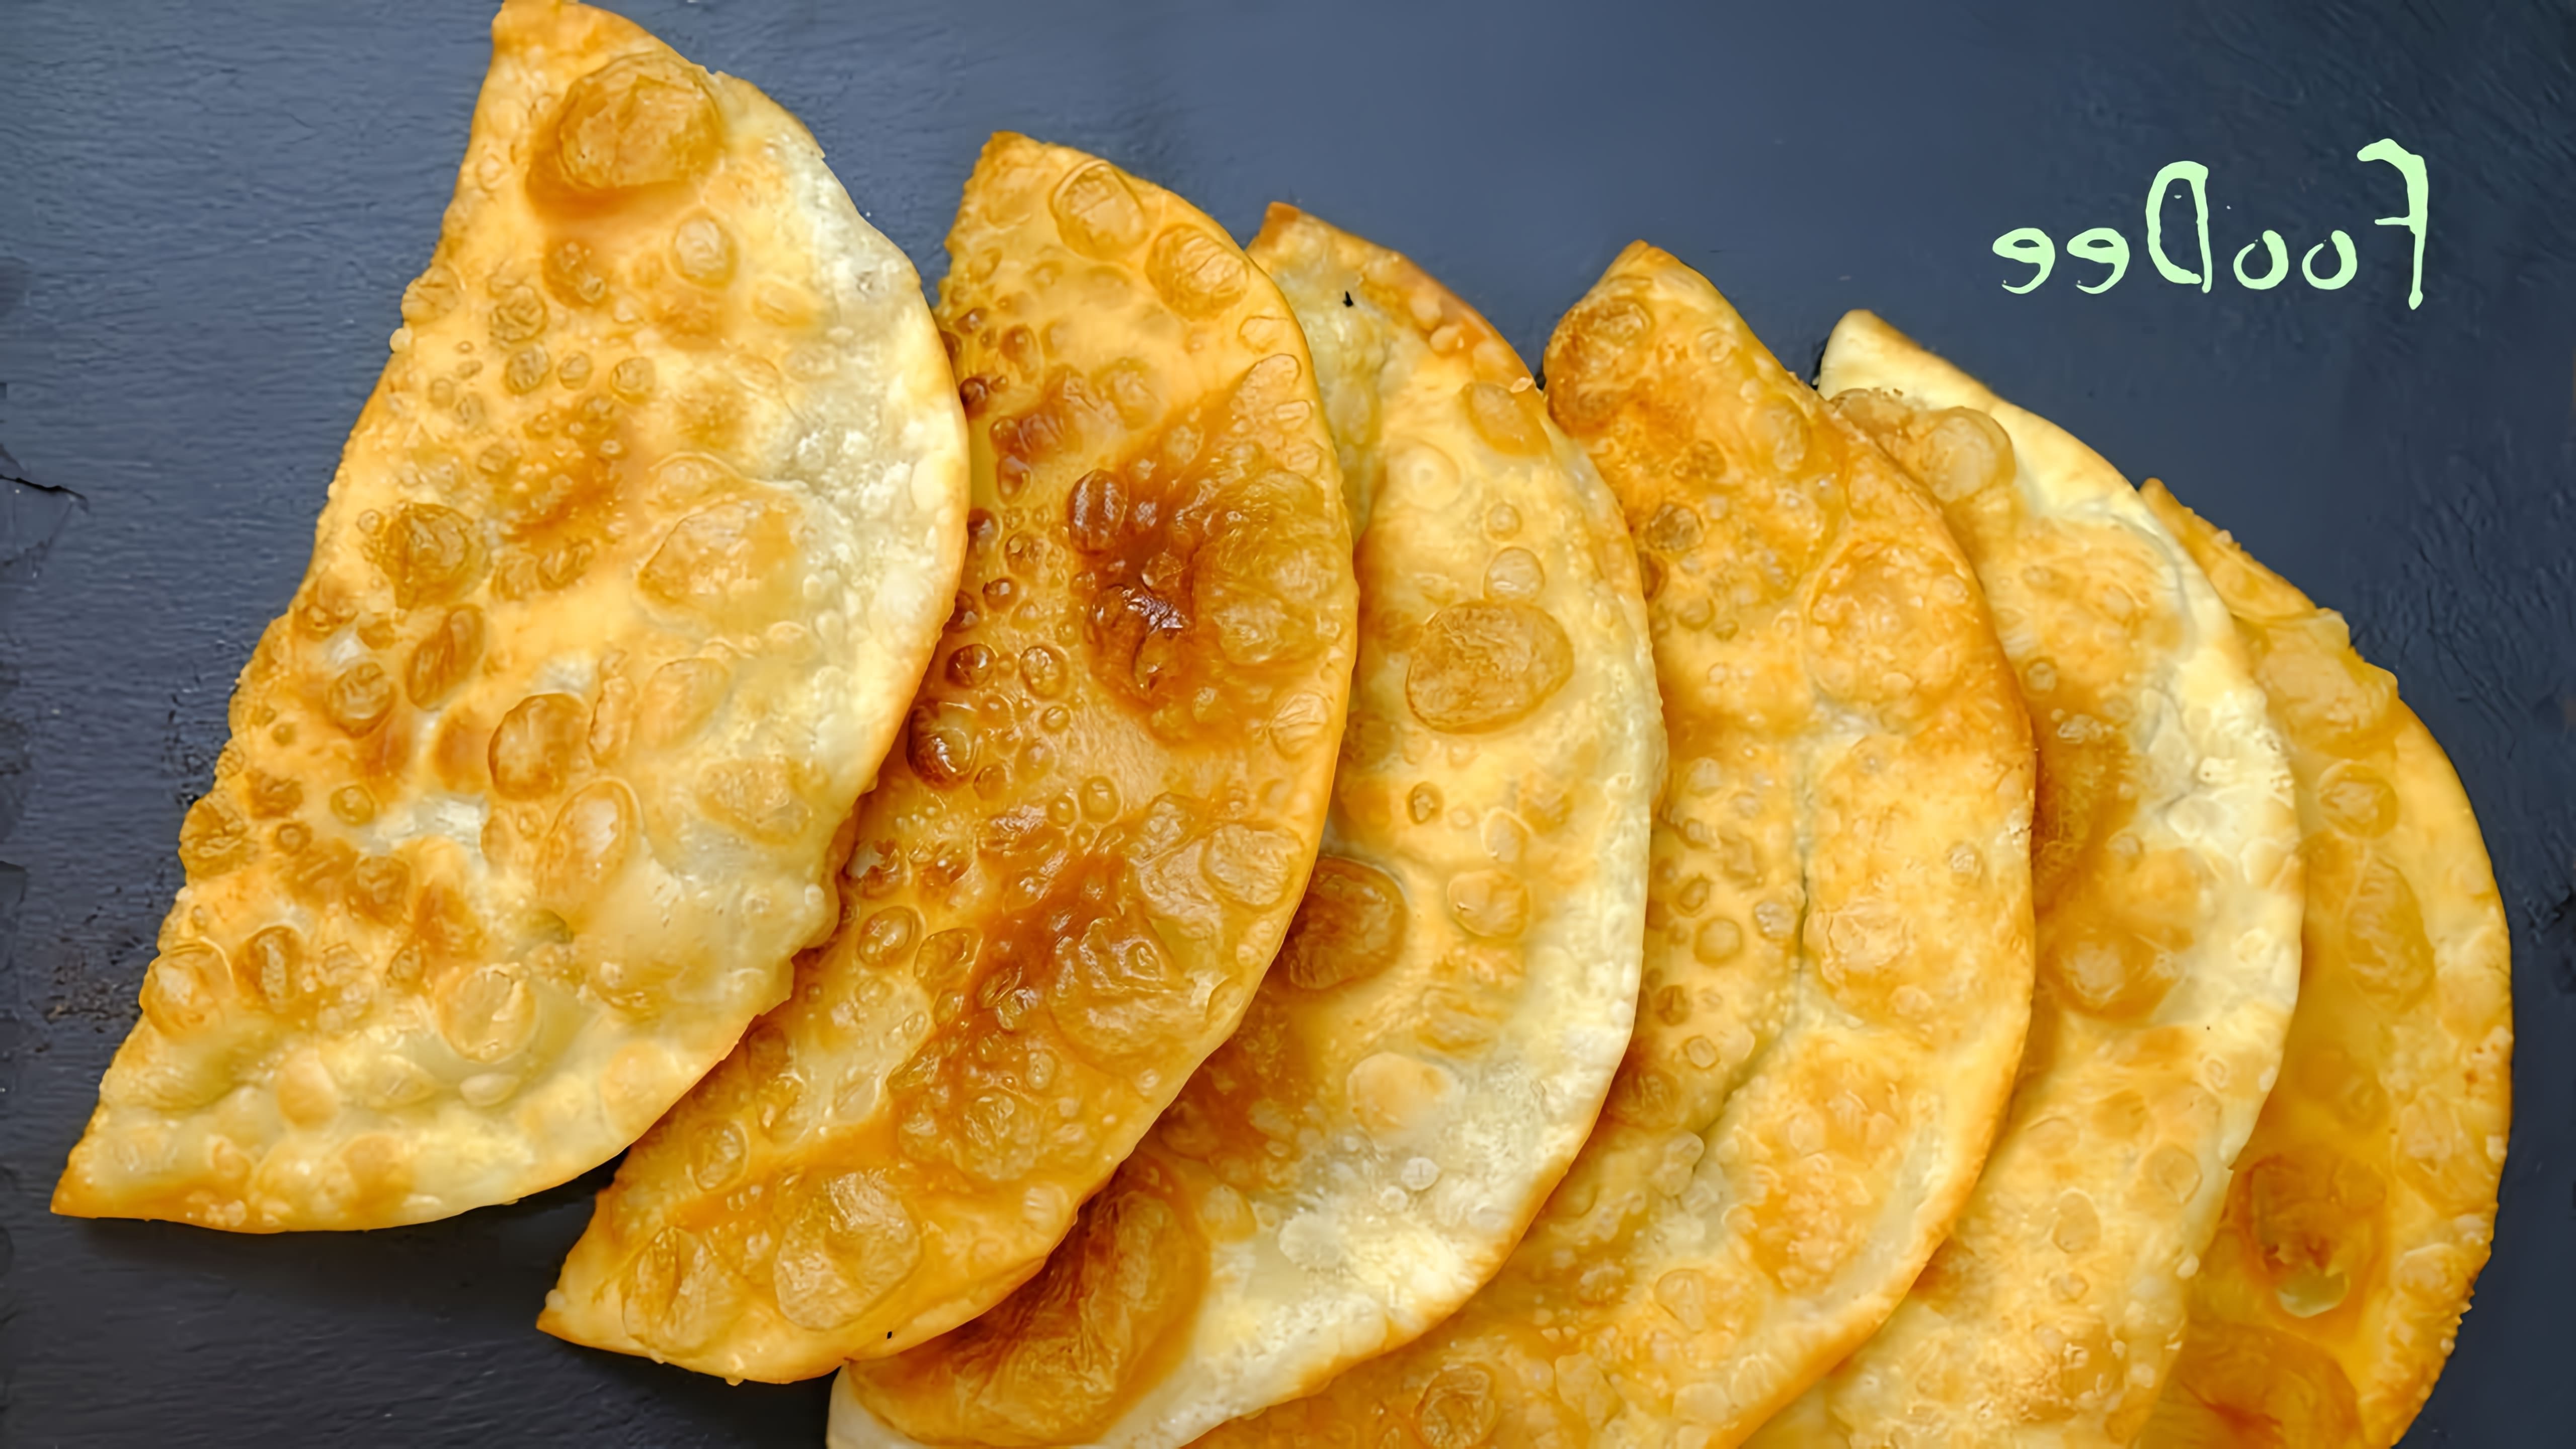 Видео рецепт приготовления чебуреков, популярных в Центральной Азии